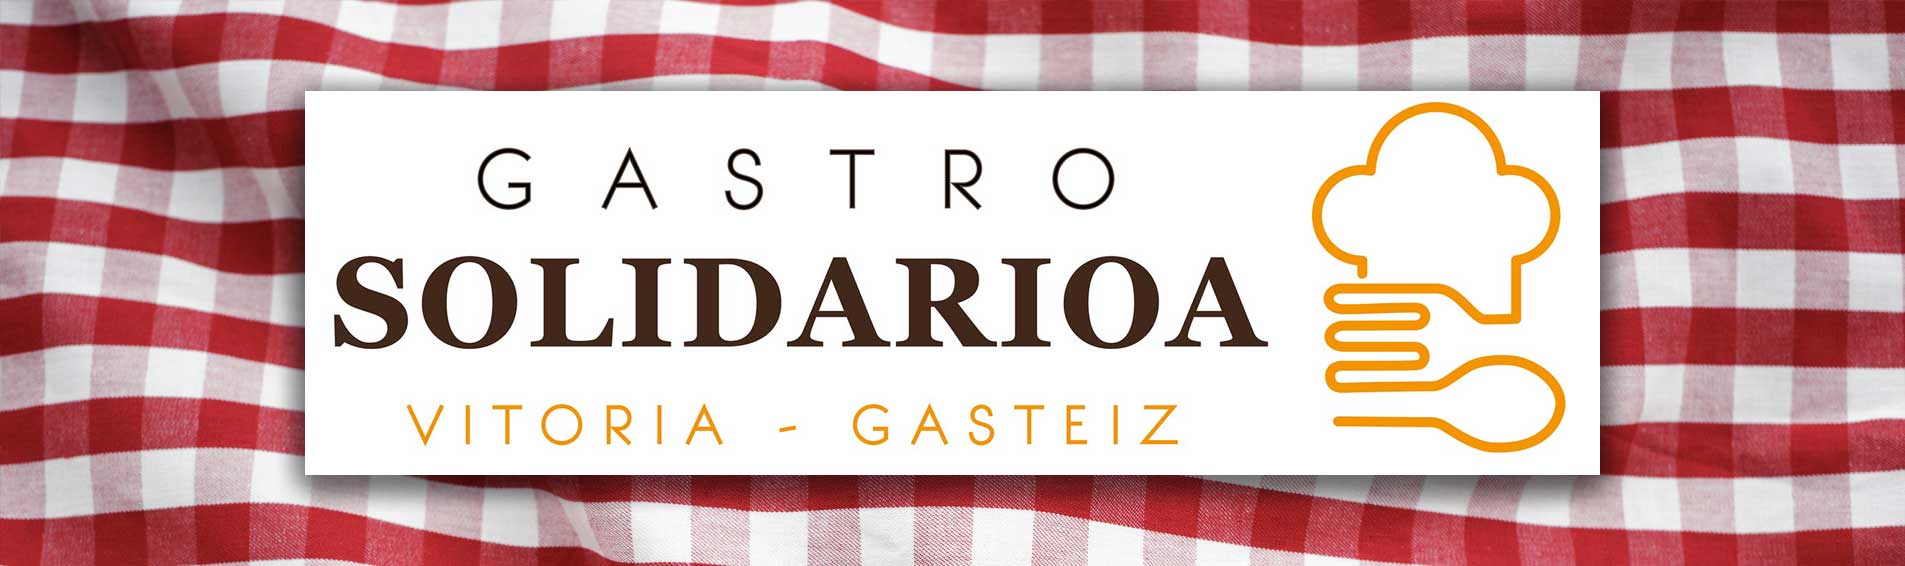 19 de octubre. Gastro Solidarioa, Vitoria-Gasteiz